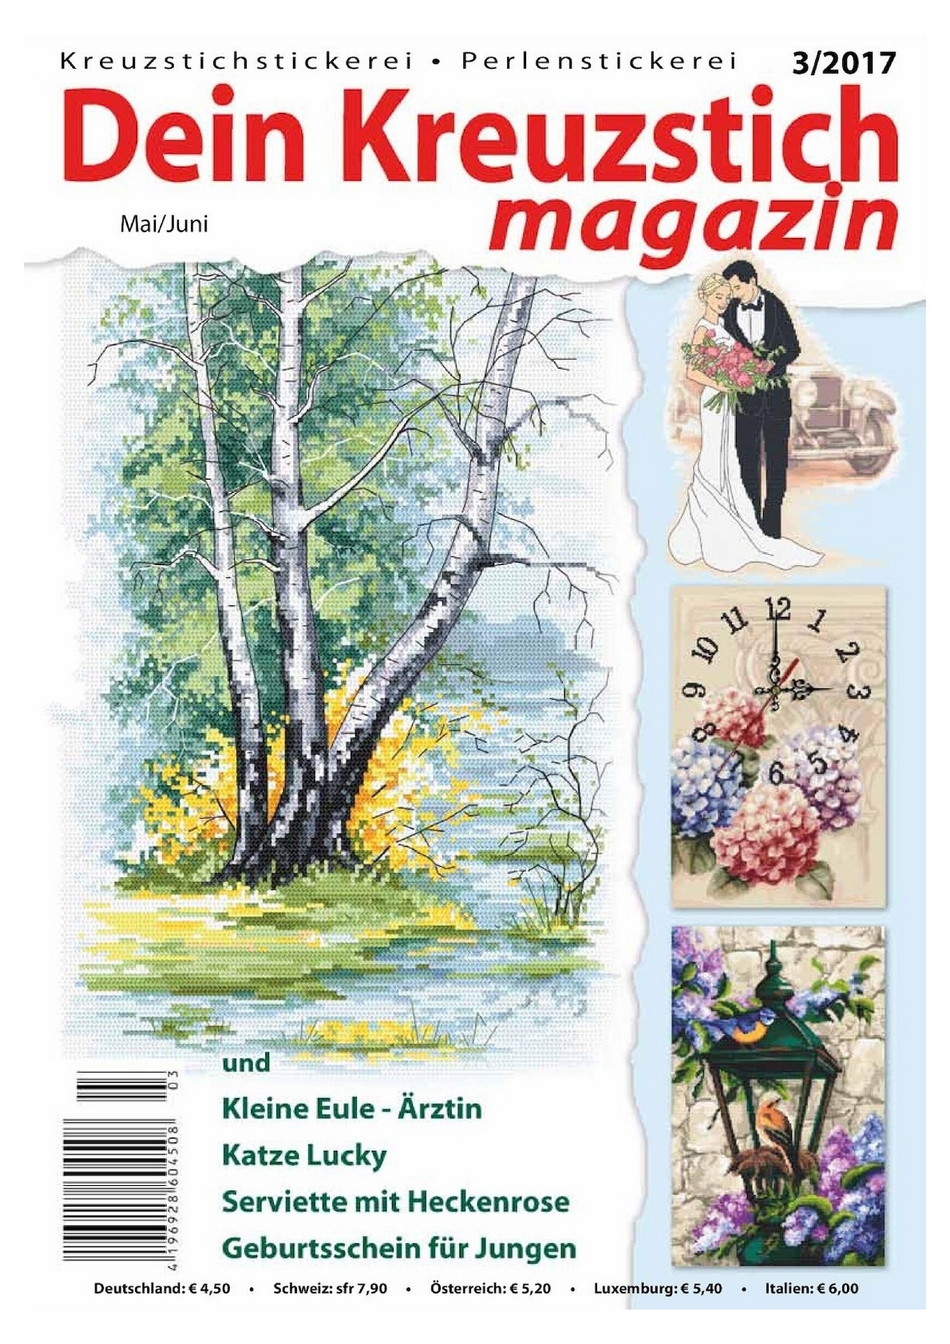 Dein Kreuzstich magazin 3 2017 / Germany